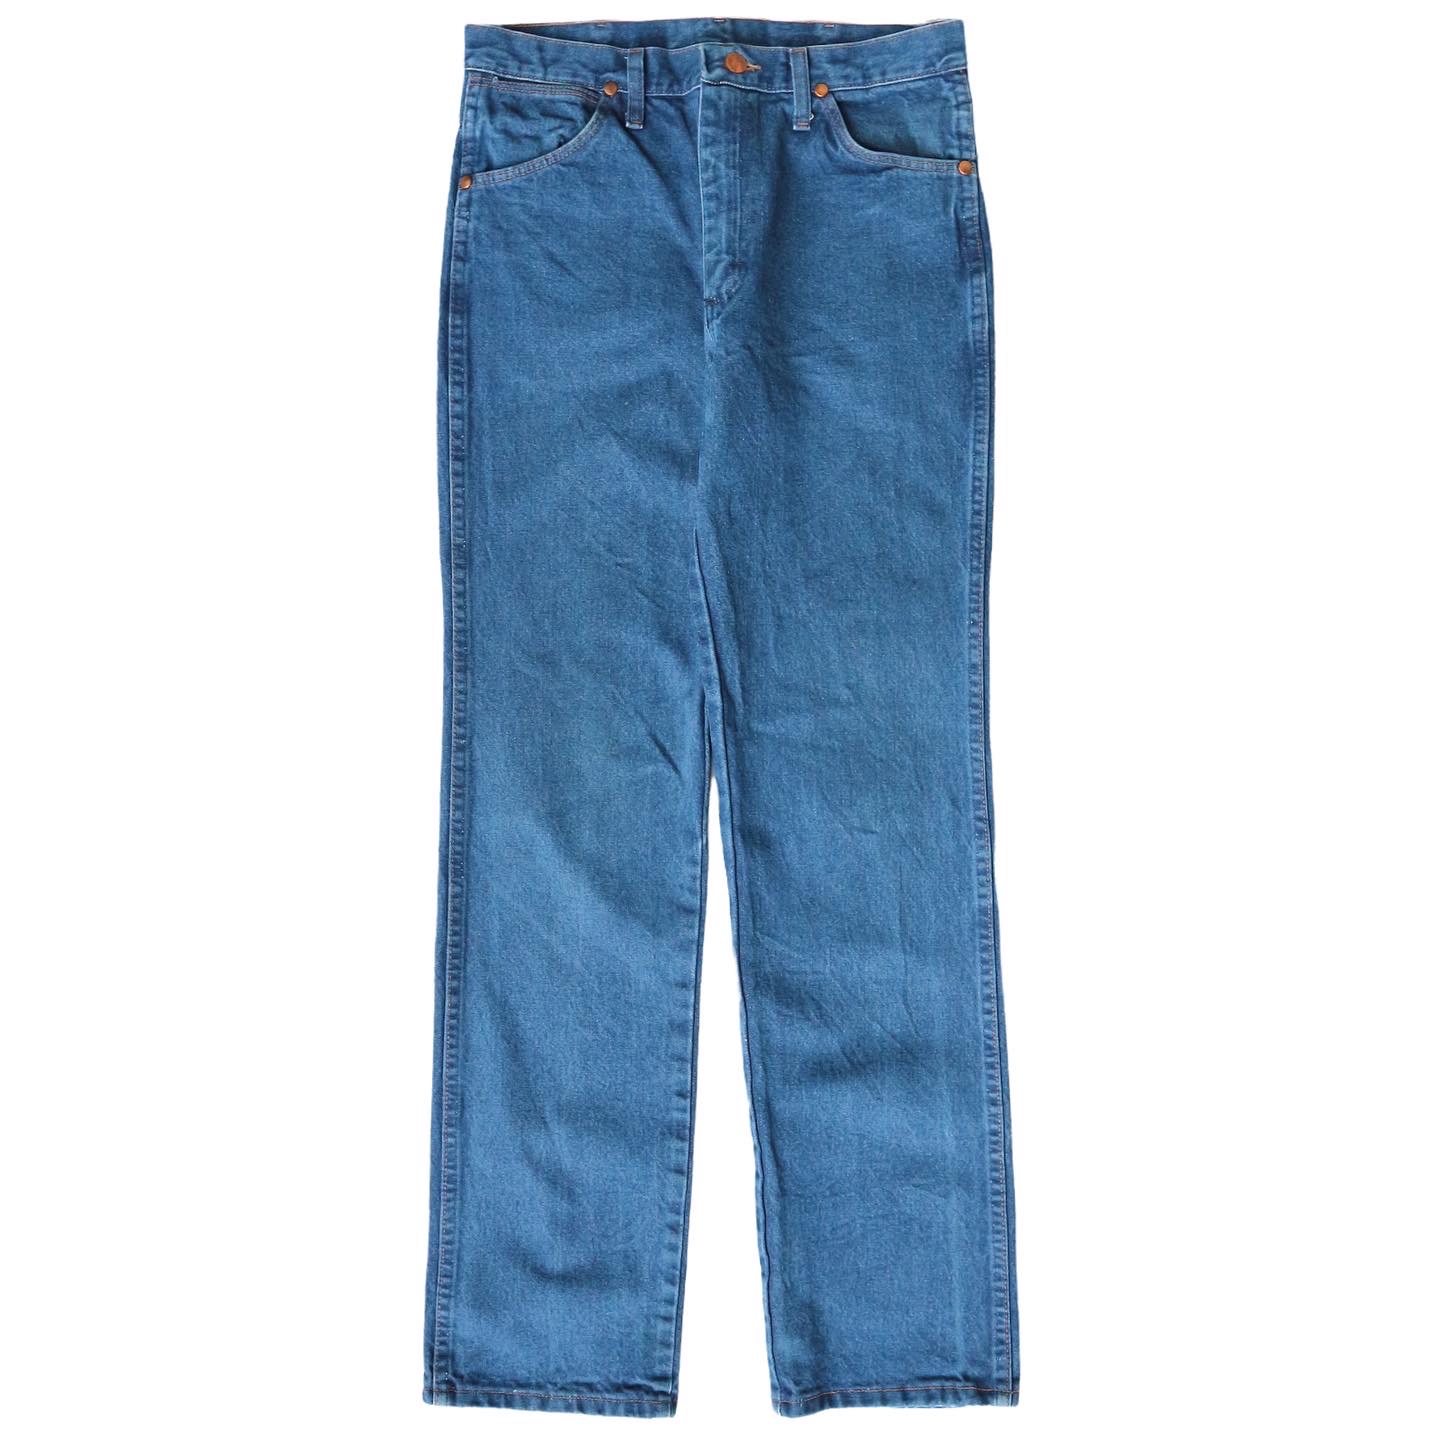 Wrangler Jeans Size 30 denimister